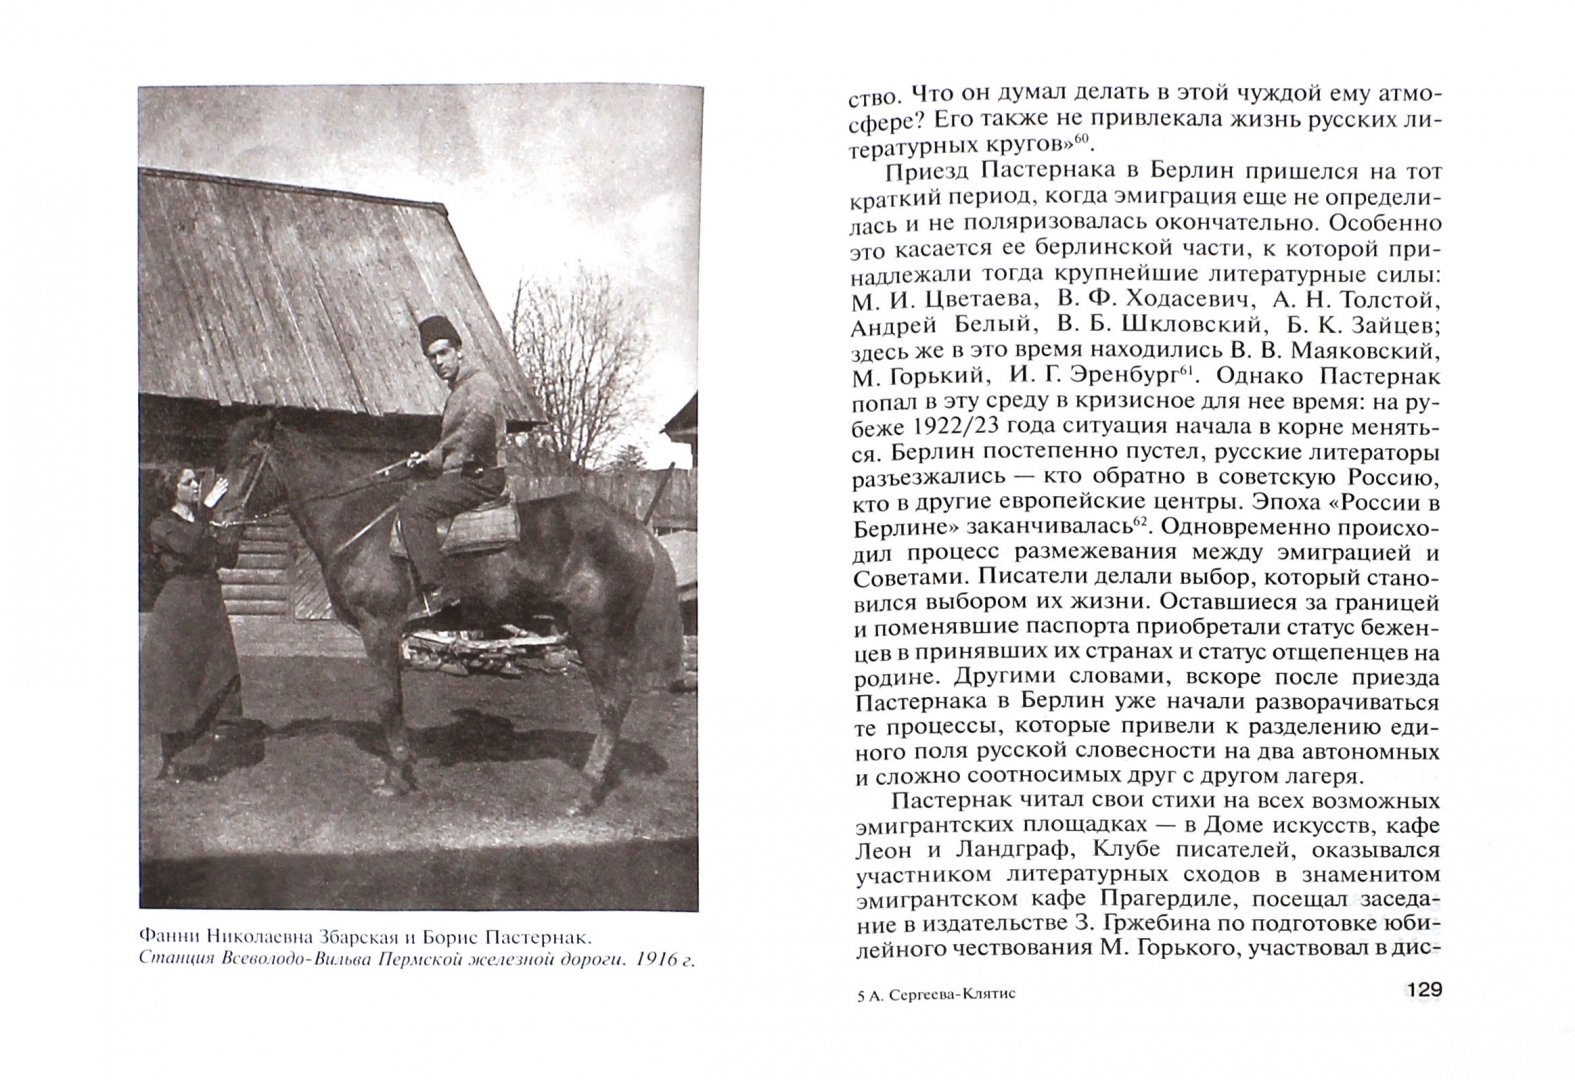 Иллюстрация 1 из 38 для Пастернак - Анна Сергеева-Клятис | Лабиринт - книги. Источник: Лабиринт